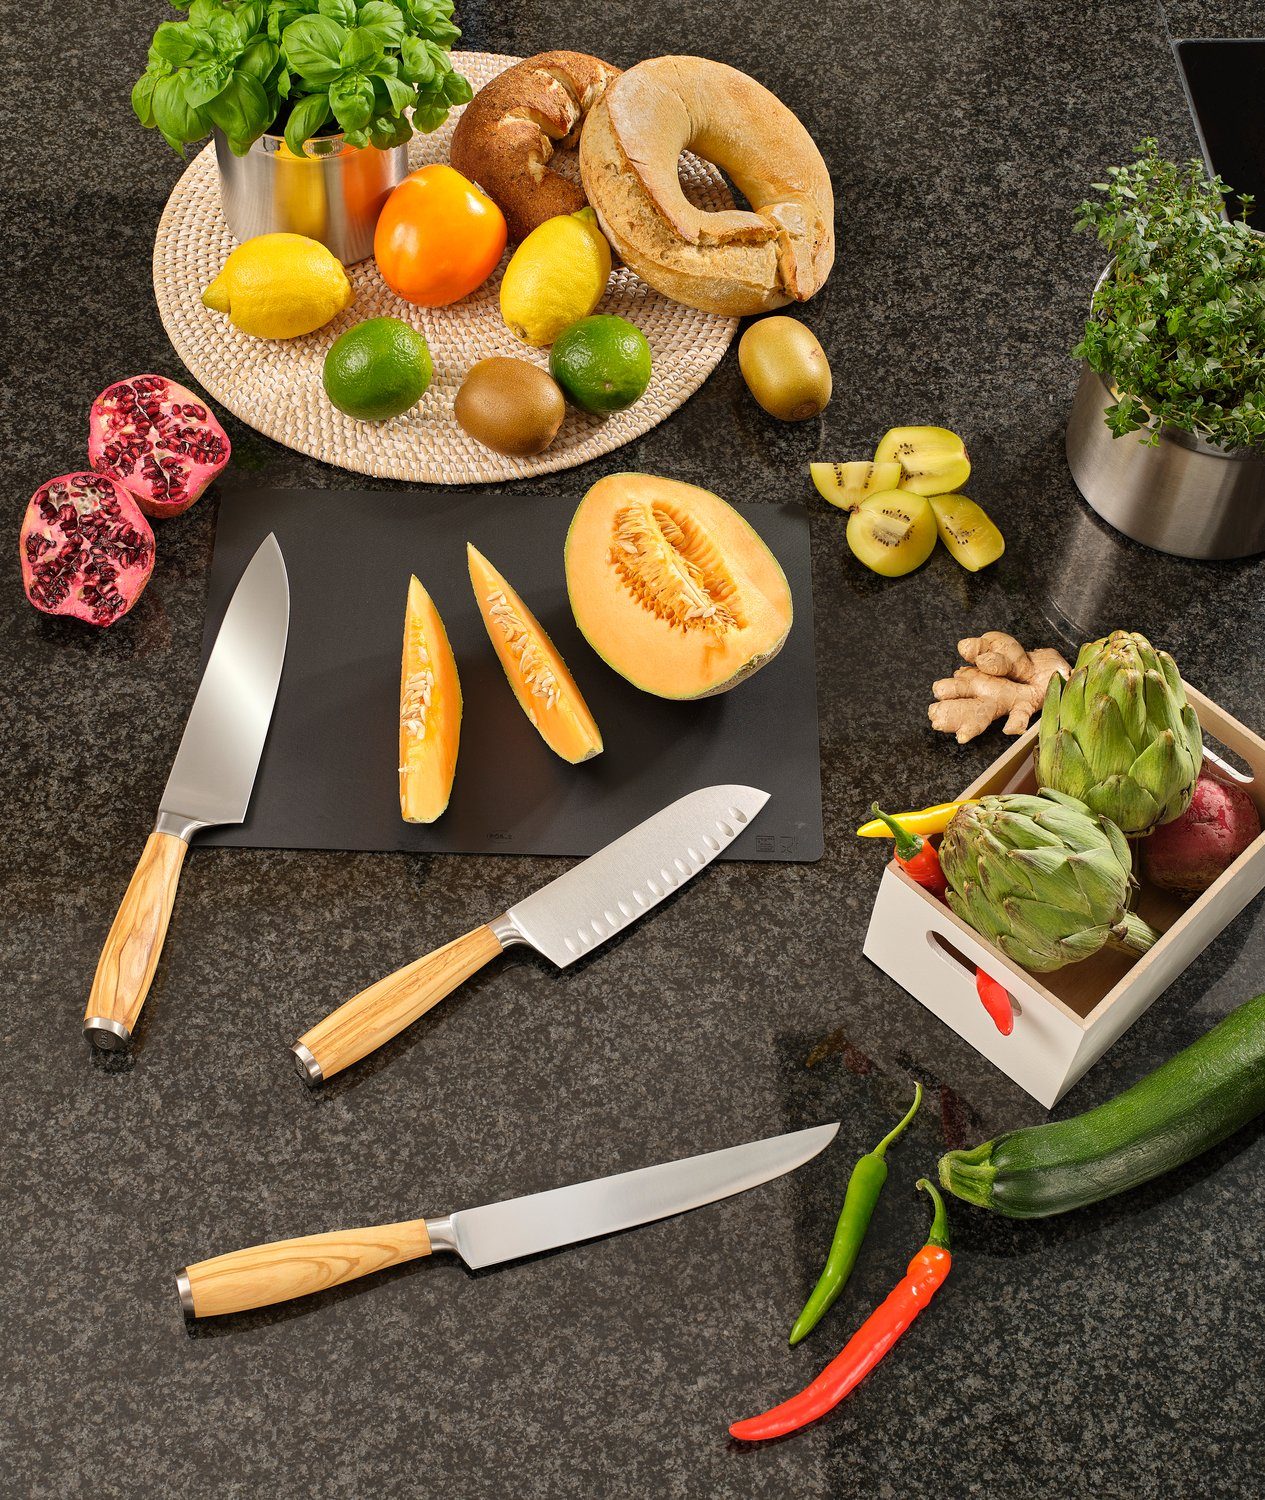 RÖSLE Fleischmesser Artesano, für Olivenholz Fleisch, Solingen, Klingenspezialstahl, Made in